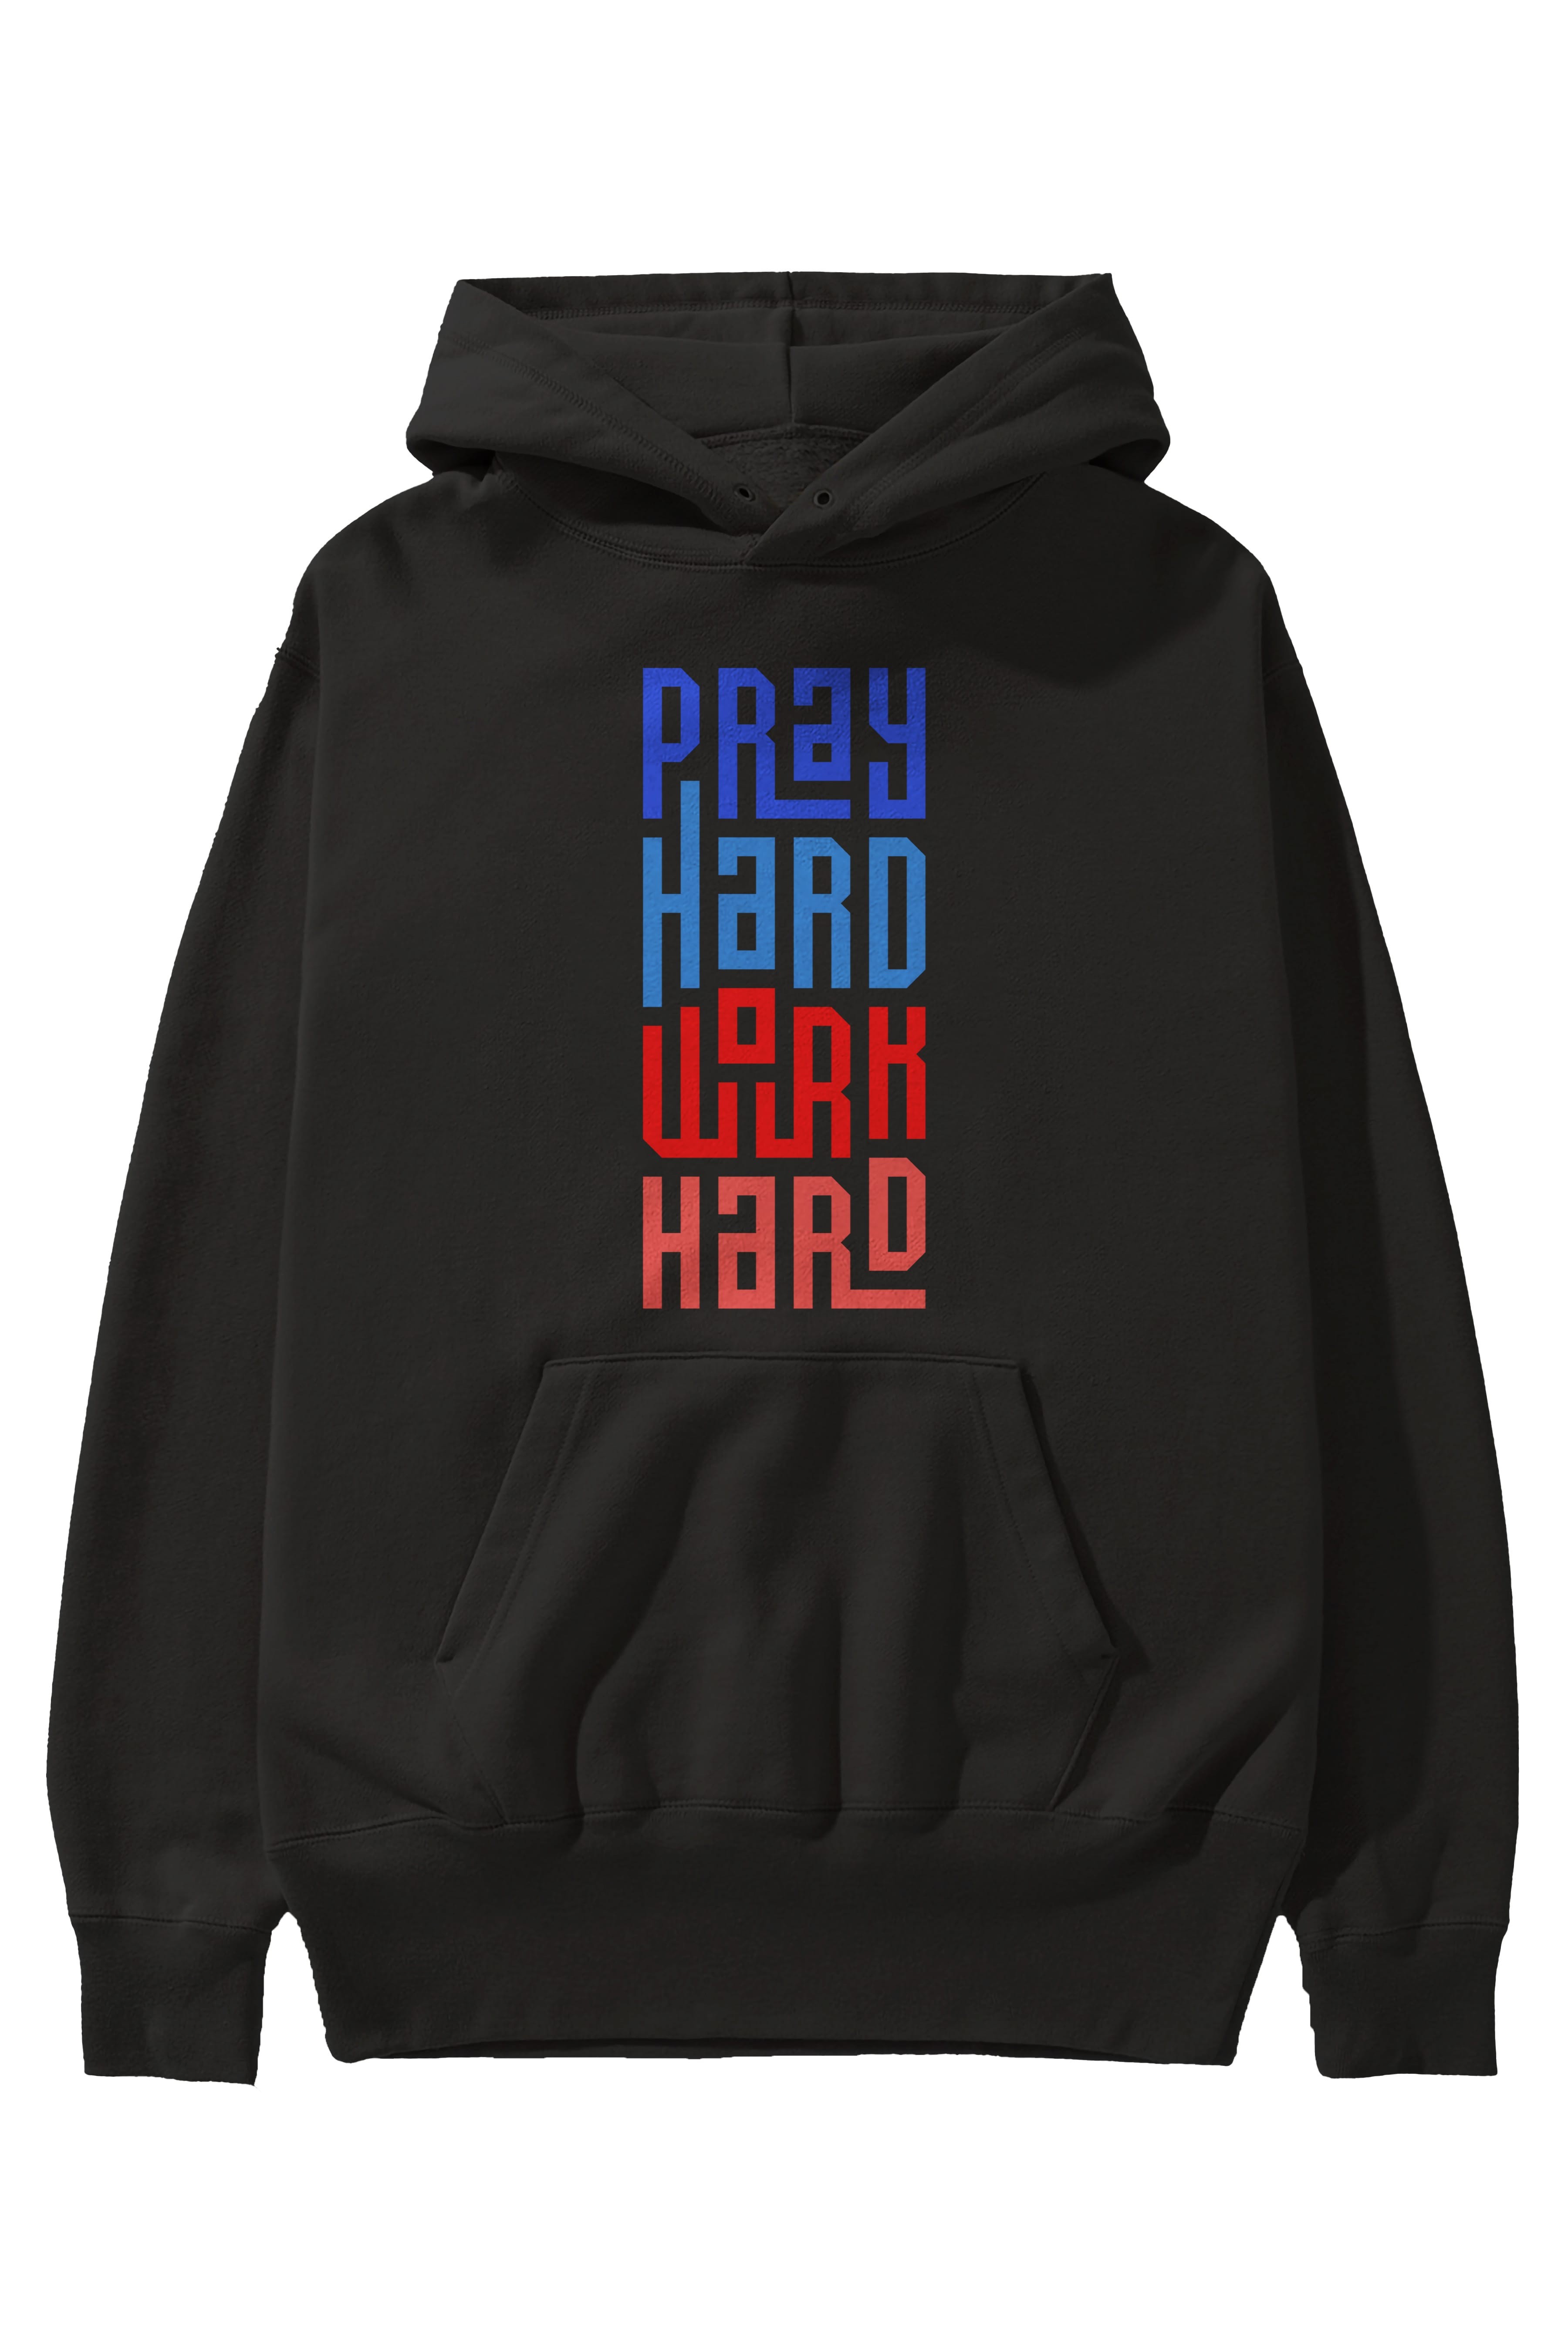 Pray Hard Work Hard Yazılı Ön Baskılı Oversize Hoodie Kapüşonlu Sweatshirt Erkek Kadın Unisex